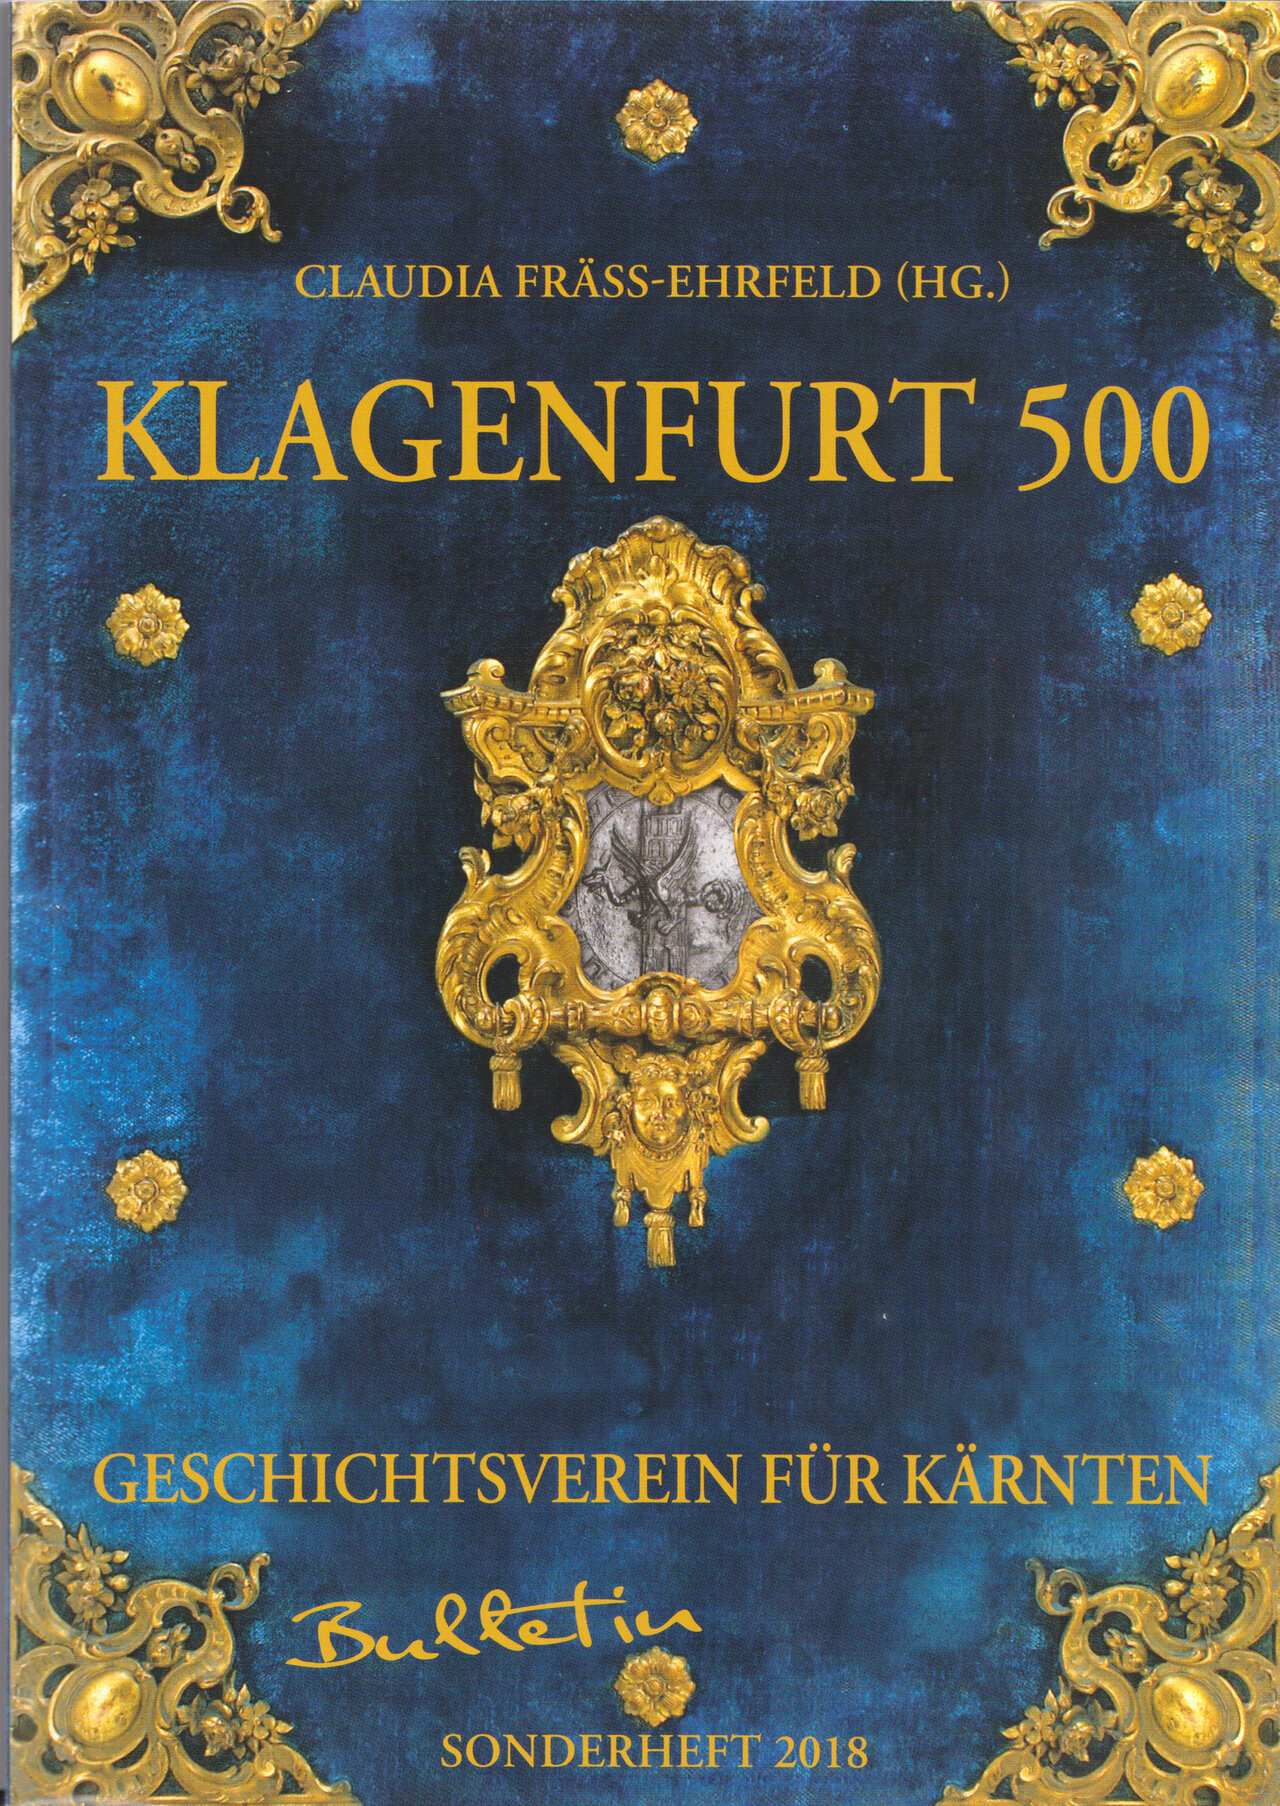 Klagenfurt 500 – Bulletin des Geschichtsvereins